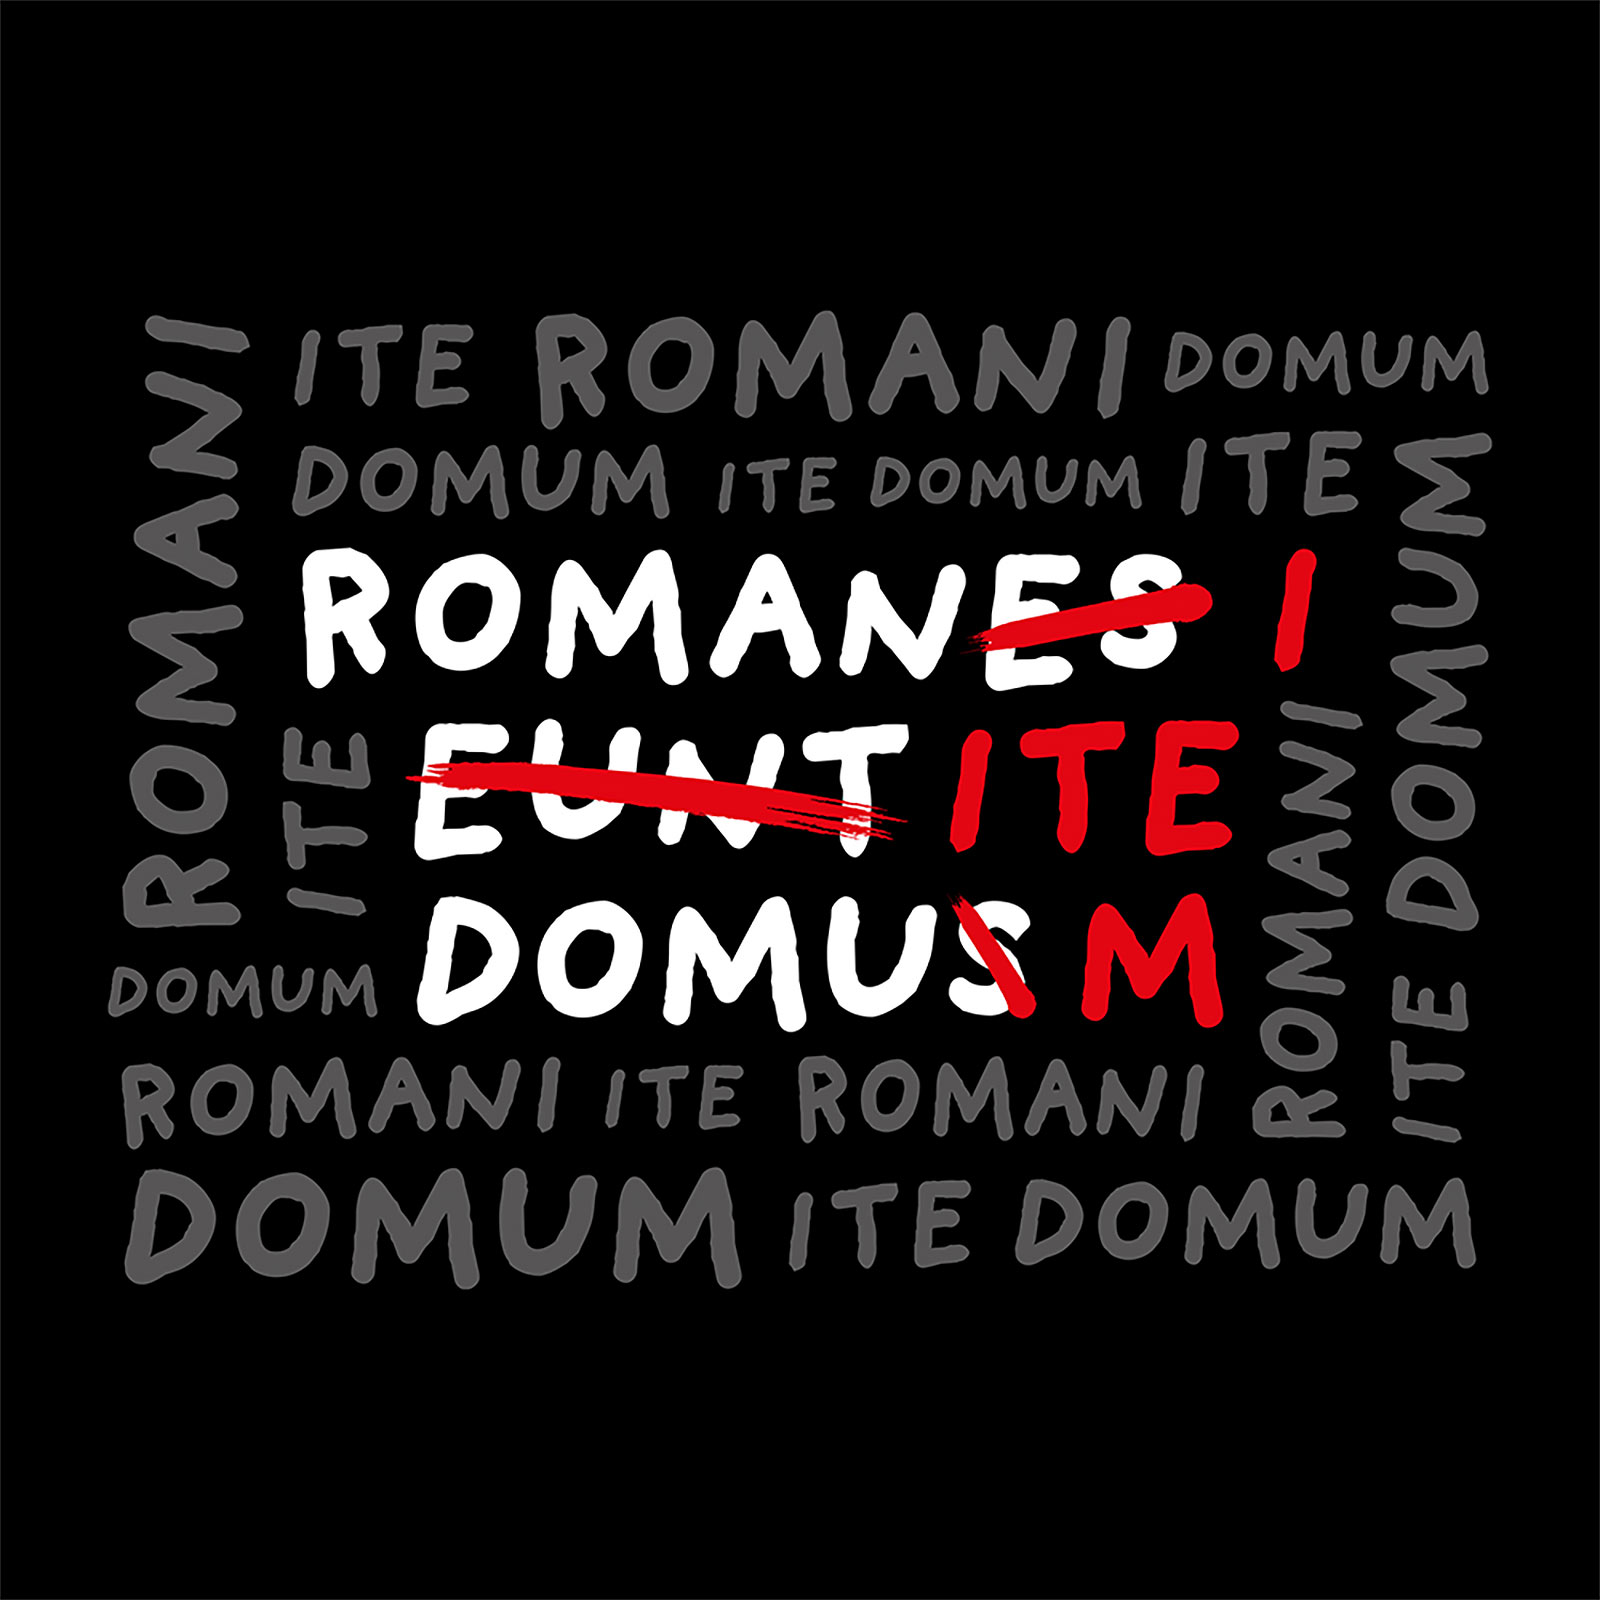 T-shirt Romani Ite Domum pour les fans de Monty Python